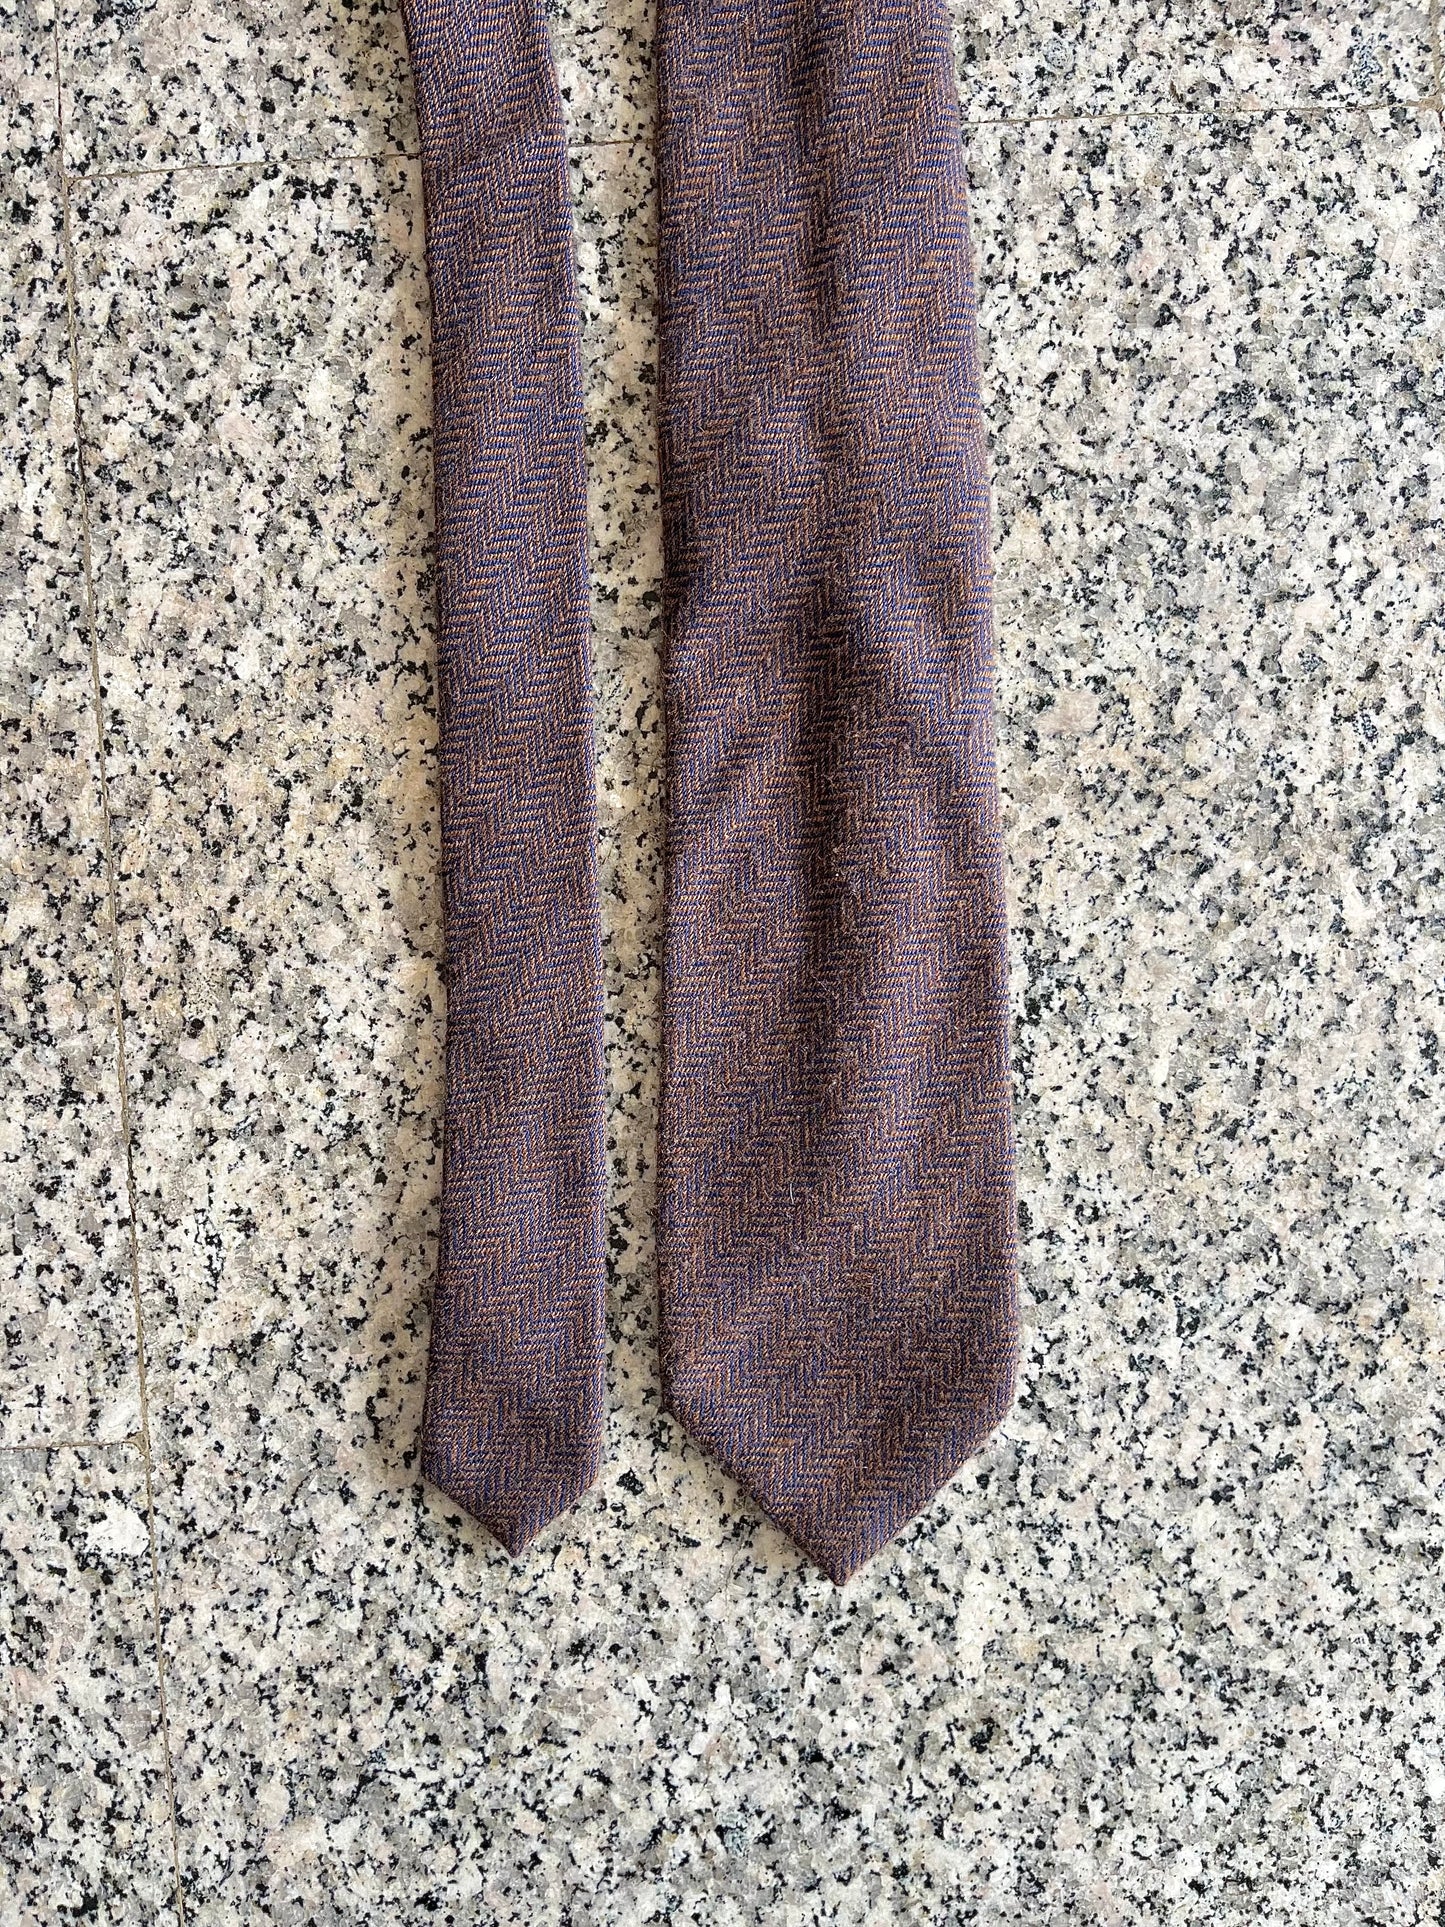 Cravatta anni ‘90 cashmere